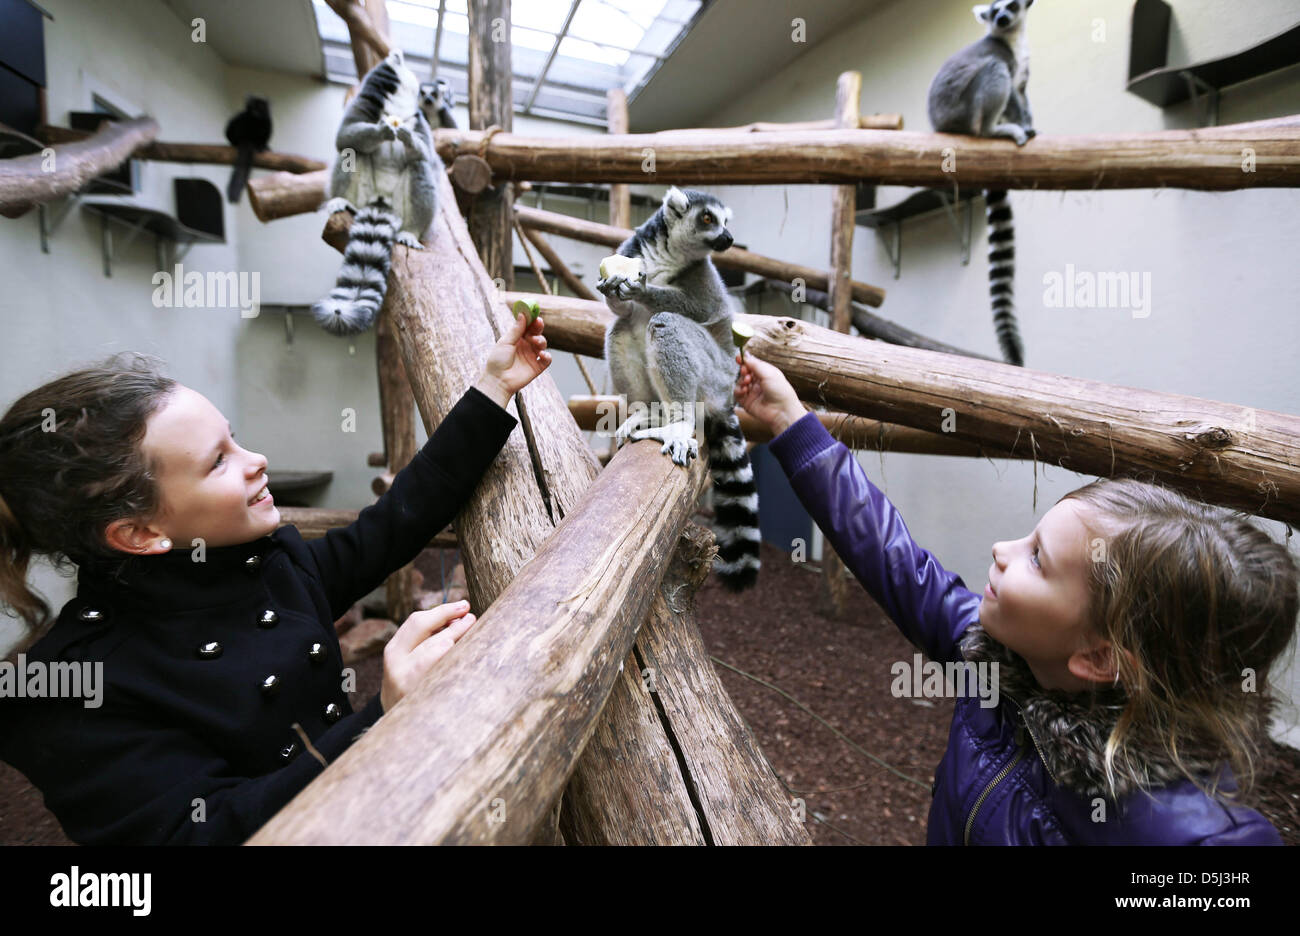 Le sorelle Anne e Vera Theunissen godono di alimentazione del lemures con spuntini a Hamburger' Zoo in Arnhem, Paesi Bassi su novembre 13,2012. Lo zoo ha invitato le ragazze a nutrire gli animali con la mano perché hanno sollevato una questione smart circa quelli prosimians. Foto: Vidiphoto Foto Stock